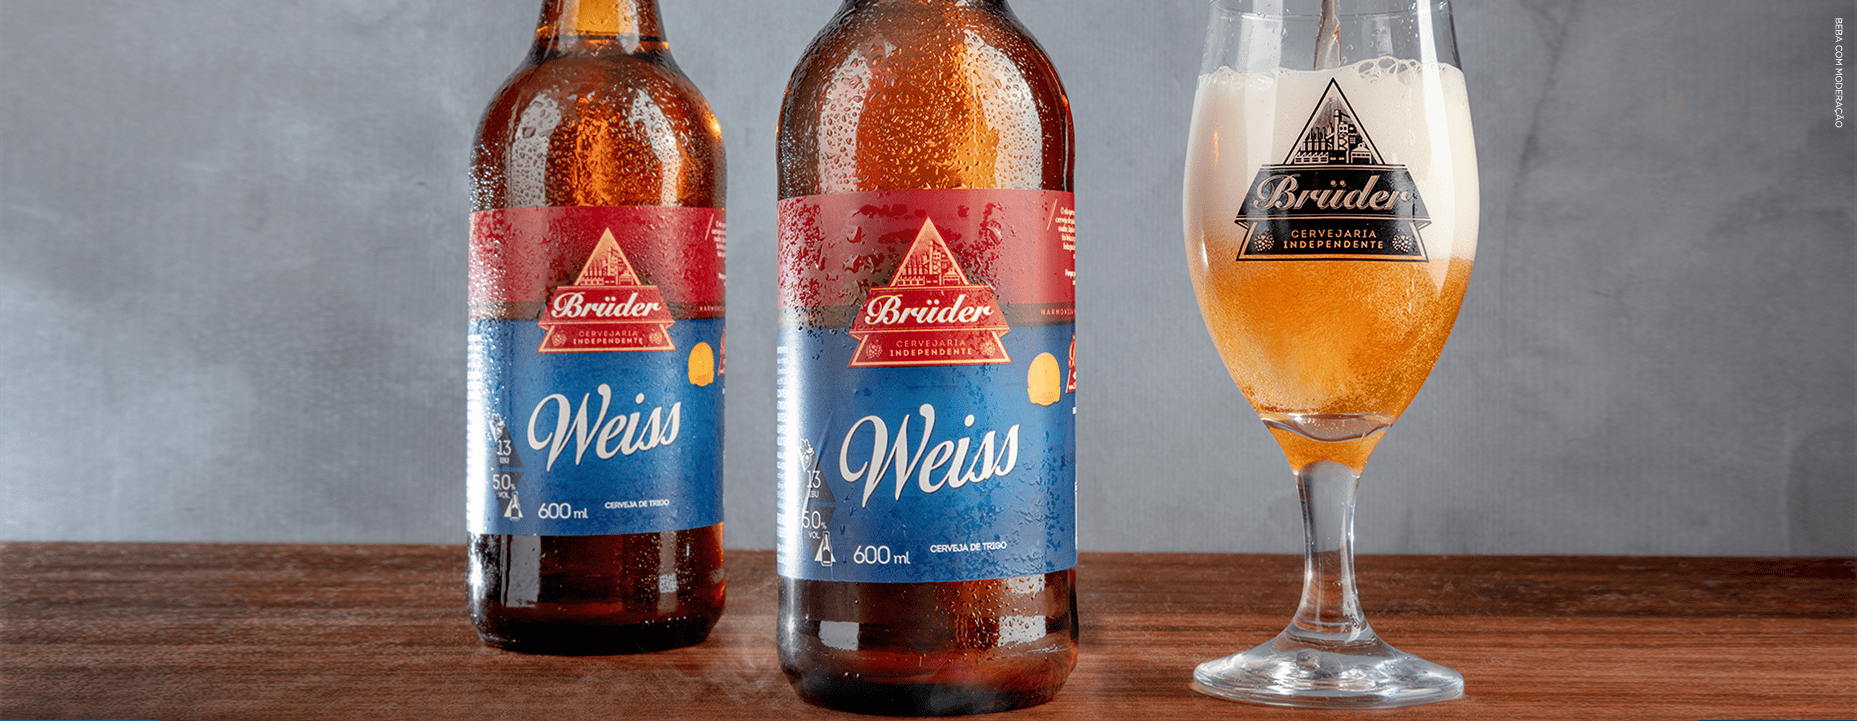 garrafas da cerveja de trigo Weiss Brüder com taças servidas.